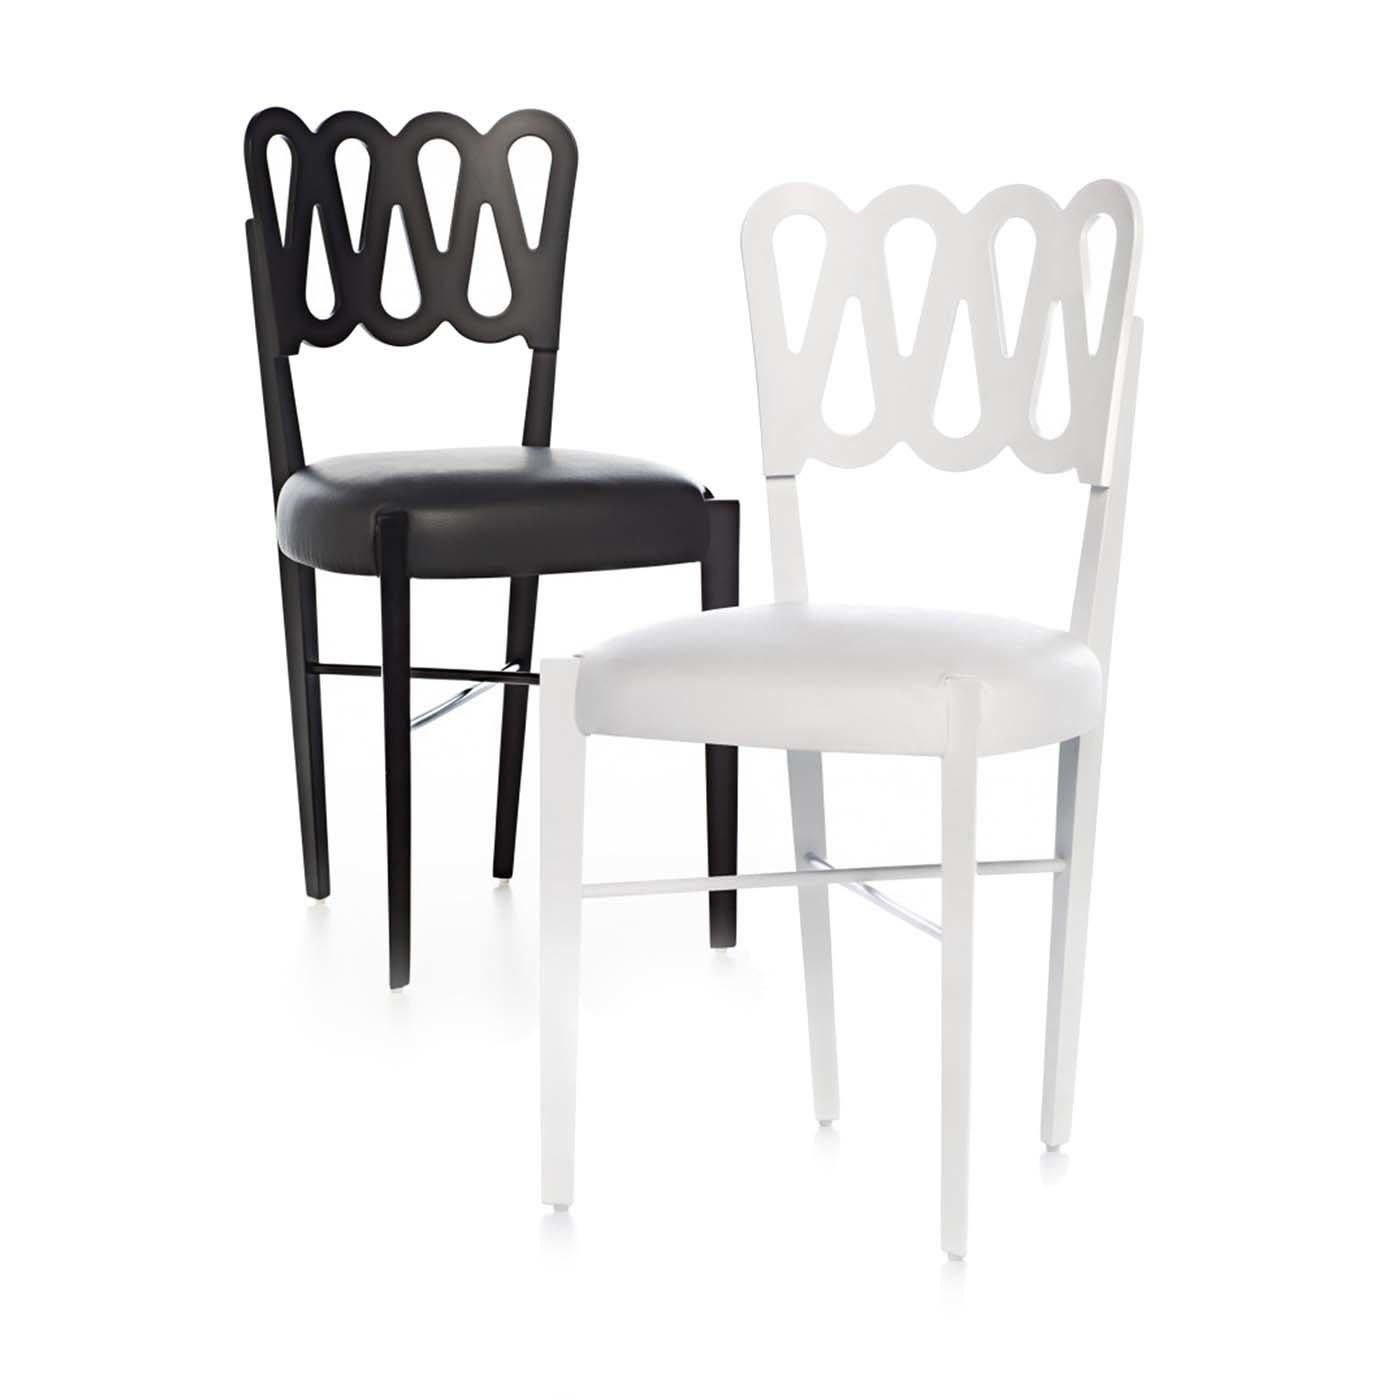 Dieser atemberaubende und moderne Stuhl ist die Neuauflage eines Entwurfs, den der legendäre Architekt Giò Ponti erstmals 1936 auf der Triennale di Milano vorgestellt hat. Die minimalistische Struktur des Möbelstücks ist mit einer wellenförmigen,